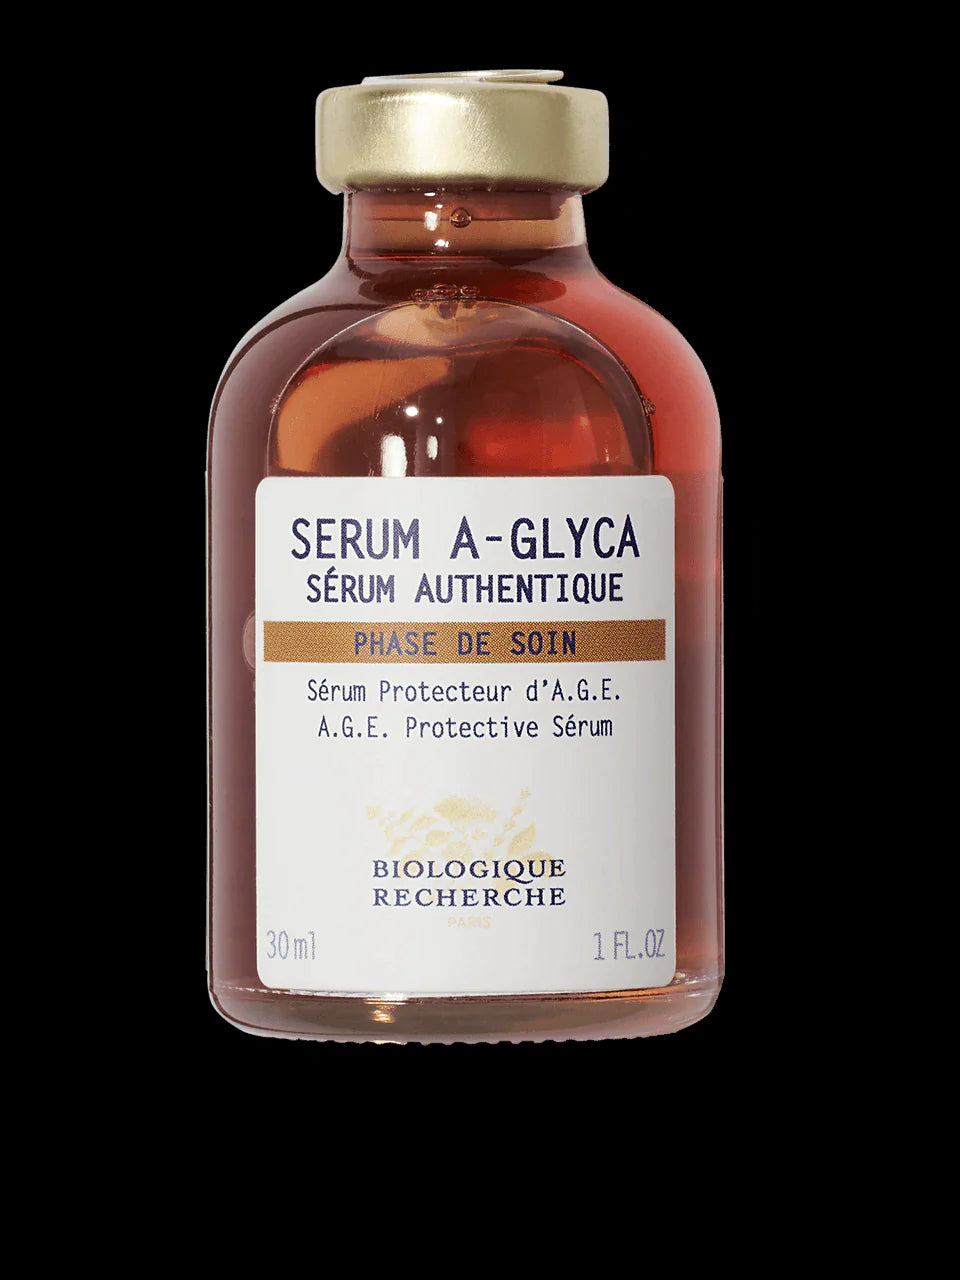 SERUM A-GLYCA 1.0oz CureDeRepos